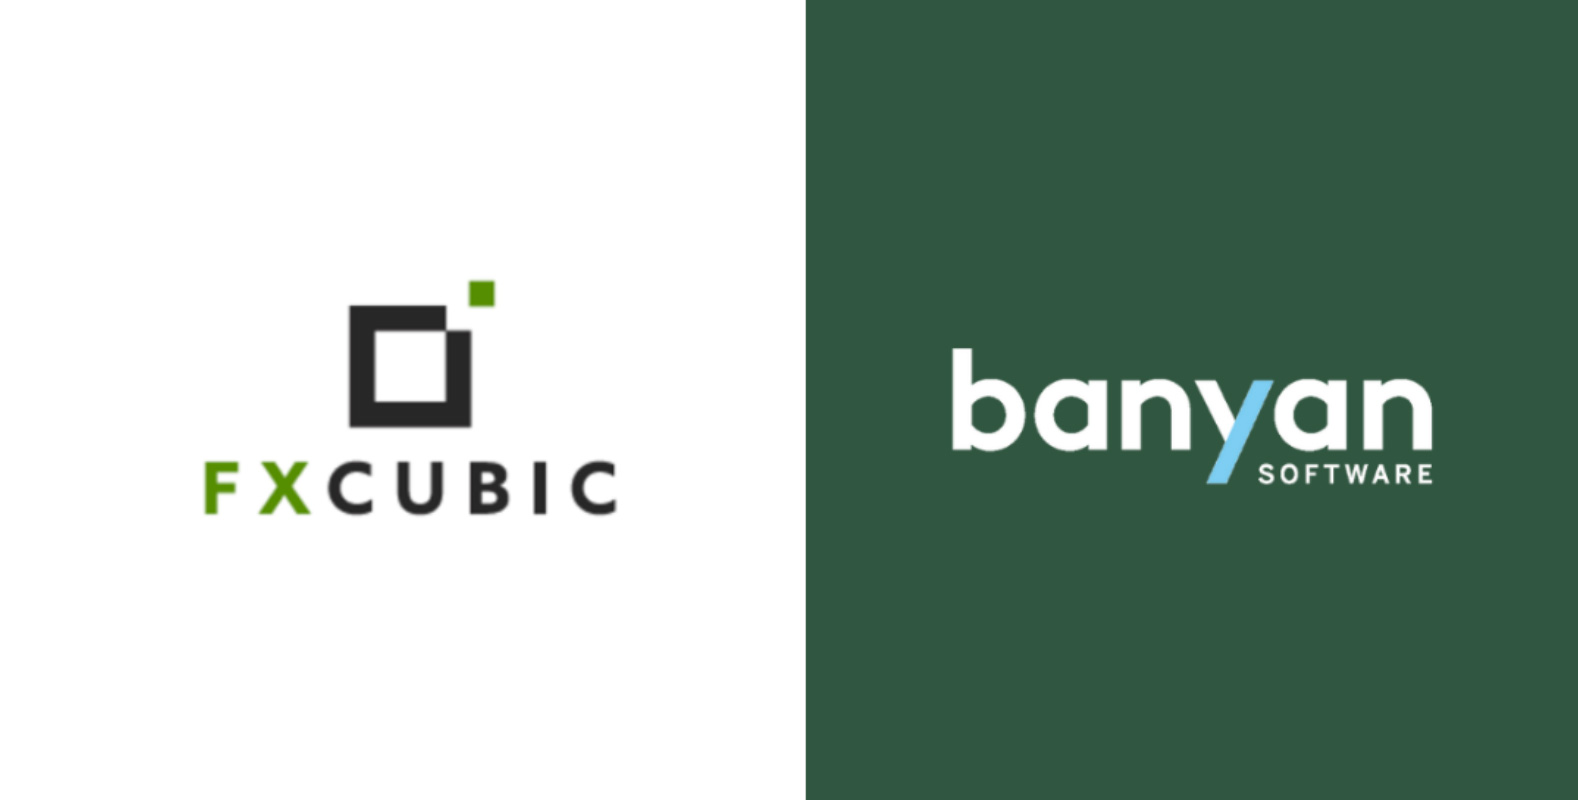 Banyan Software Announces Acquisition of FXCubic